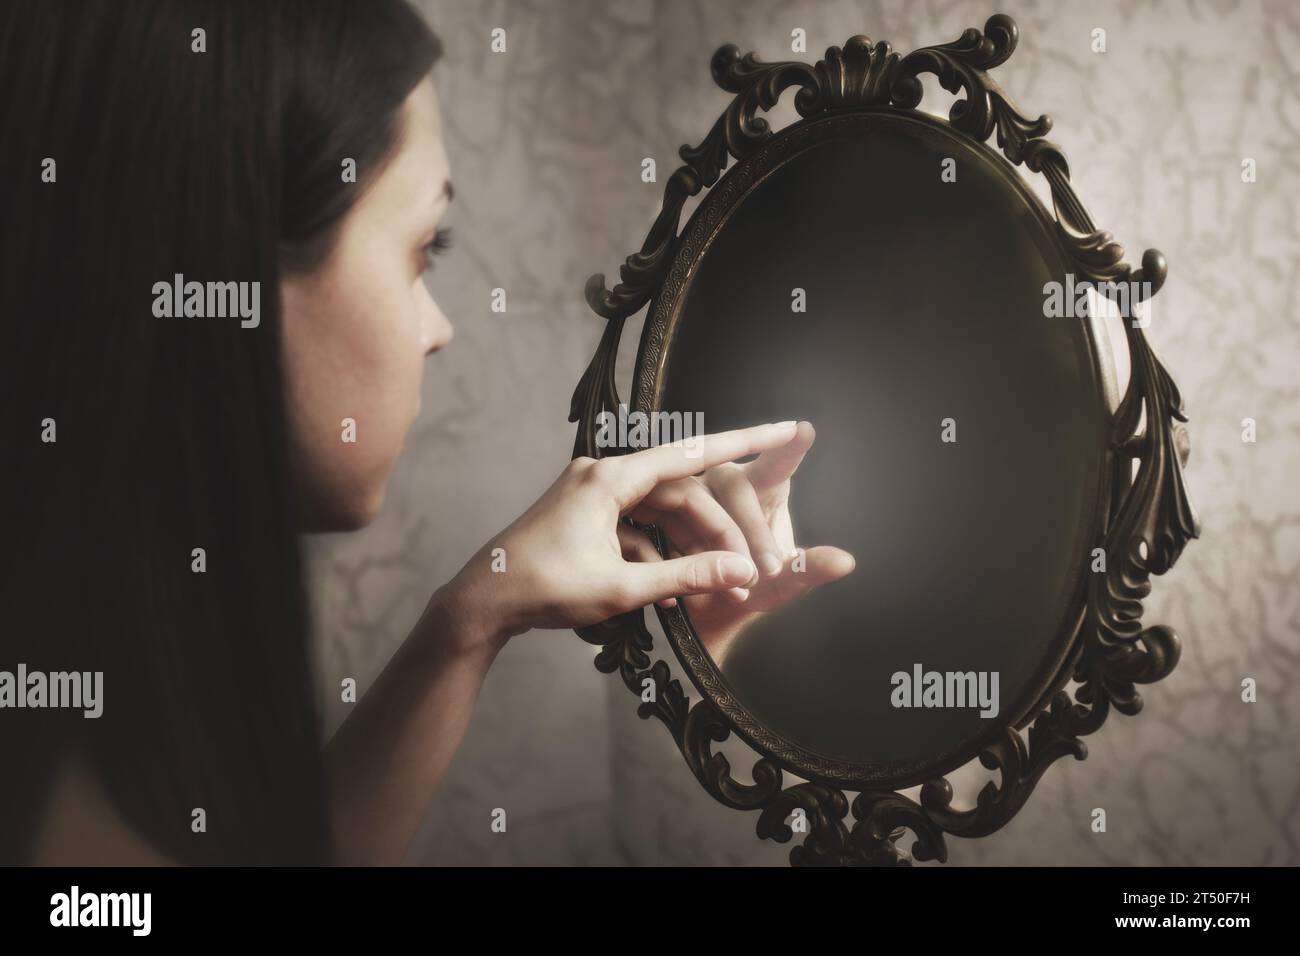 la donna tocca il riflesso di se stessa nello specchio, concetto astratto Foto Stock